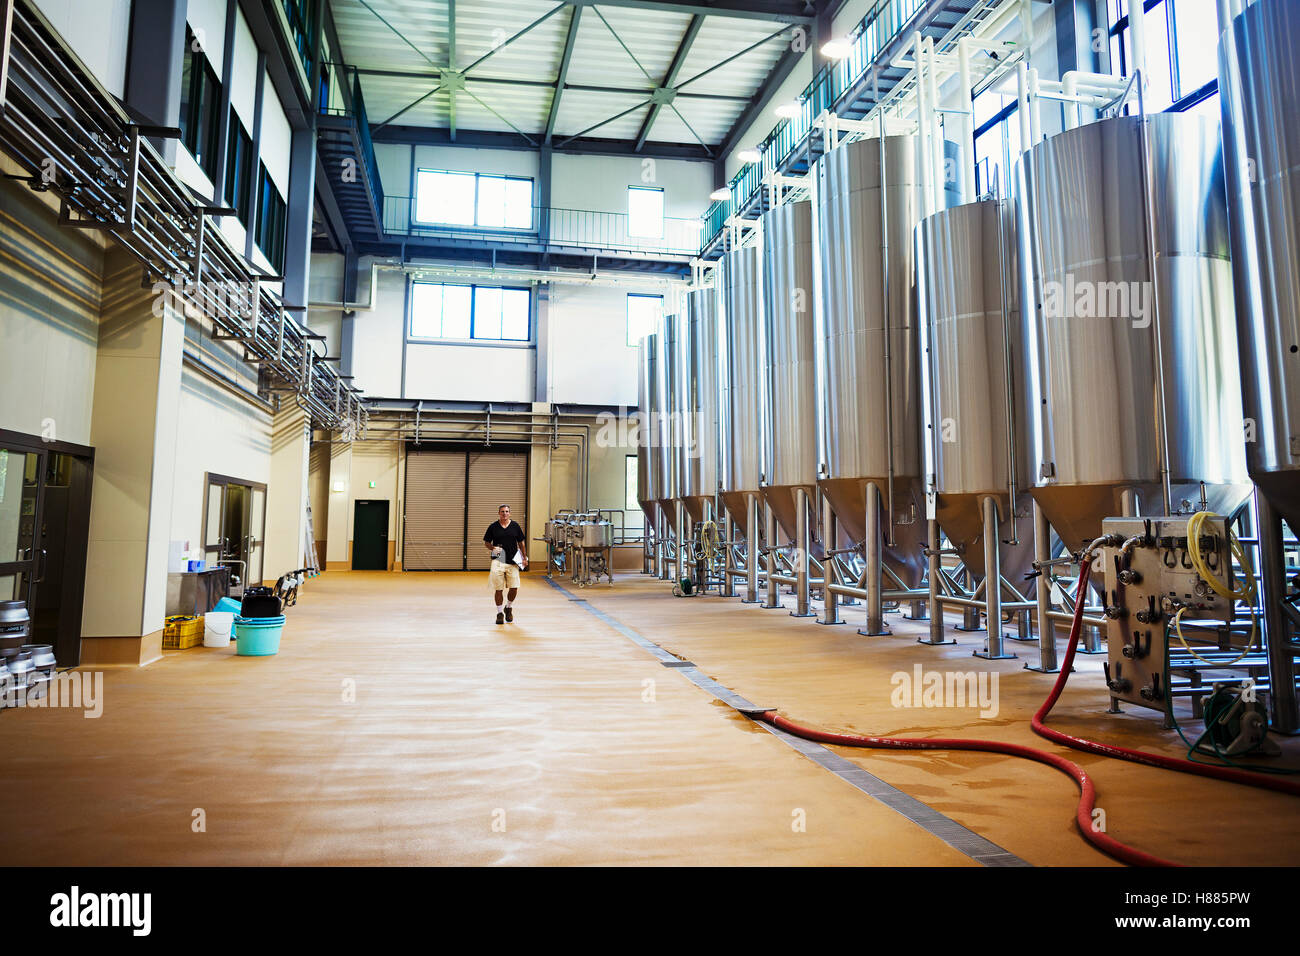 Vista interior de una cervecería con una fila de tanques de cerveza de metal. Foto de stock